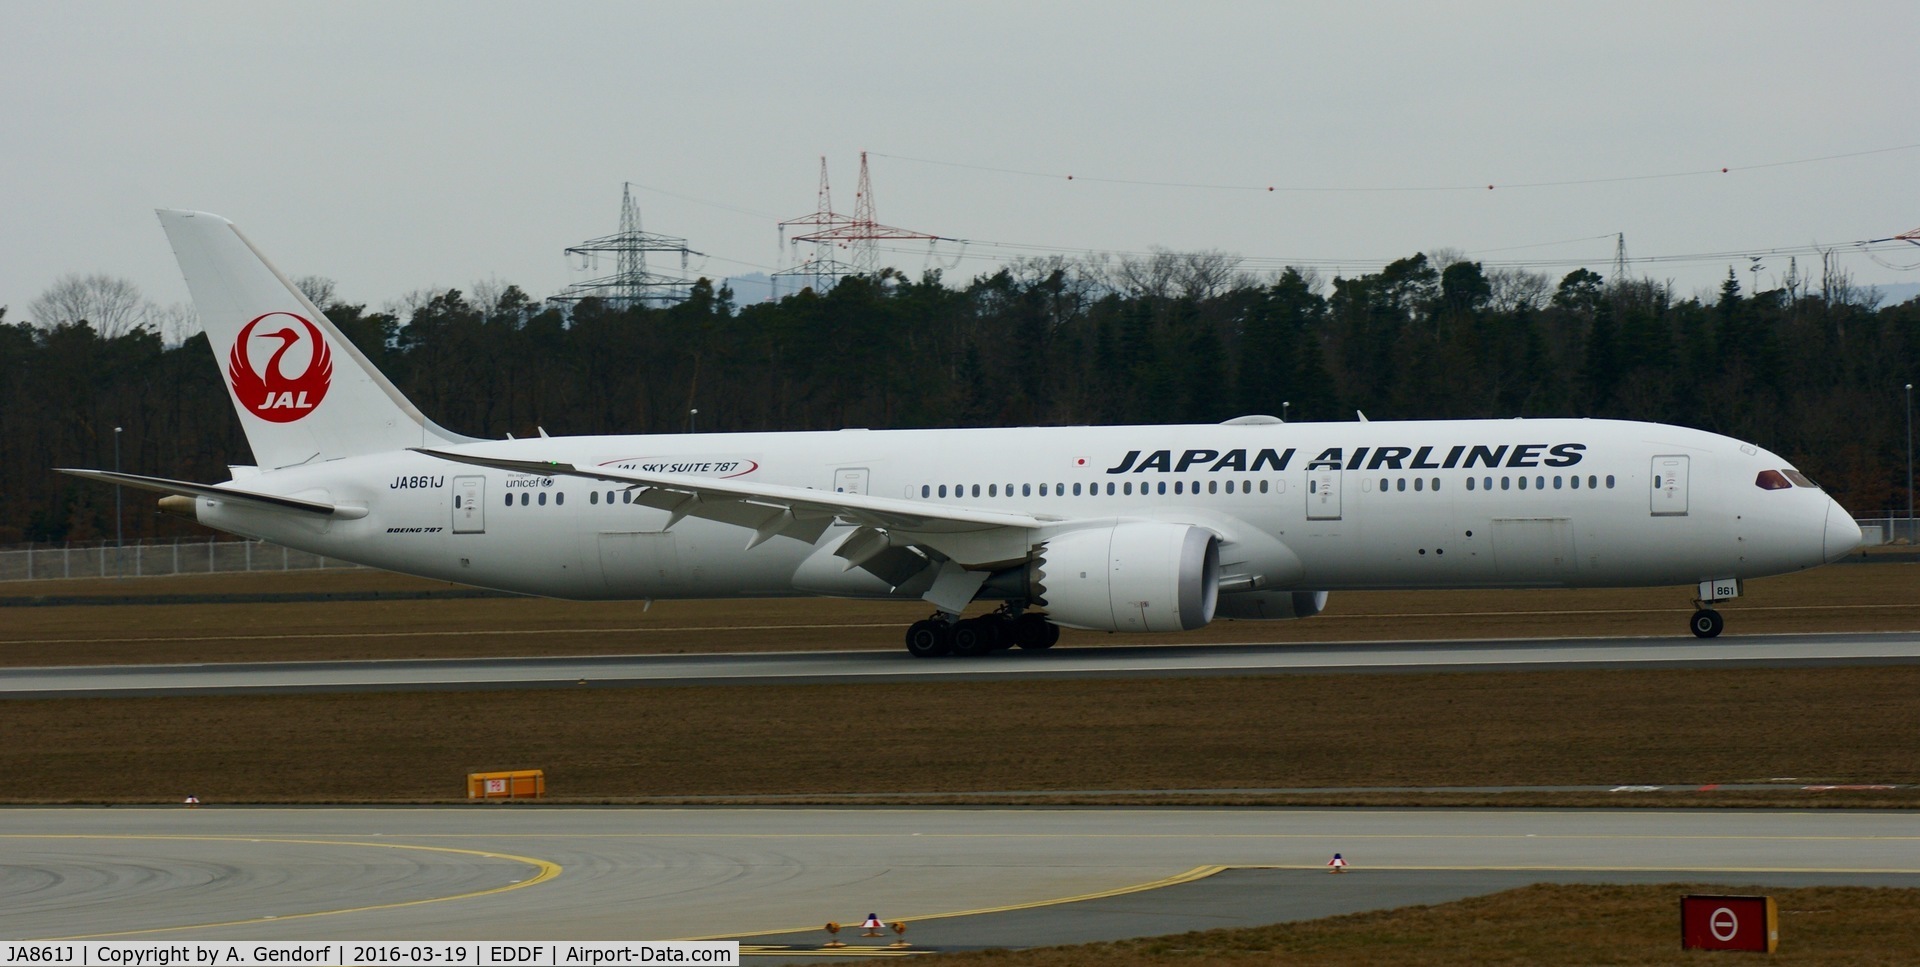 JA861J, 2013 Boeing 787-9 Dreamliner Dreamliner C/N 35422, Japan Airlines, is here taxiing to the gate, shortly after landing at Frankfurt Rhein/Main(EDDF)